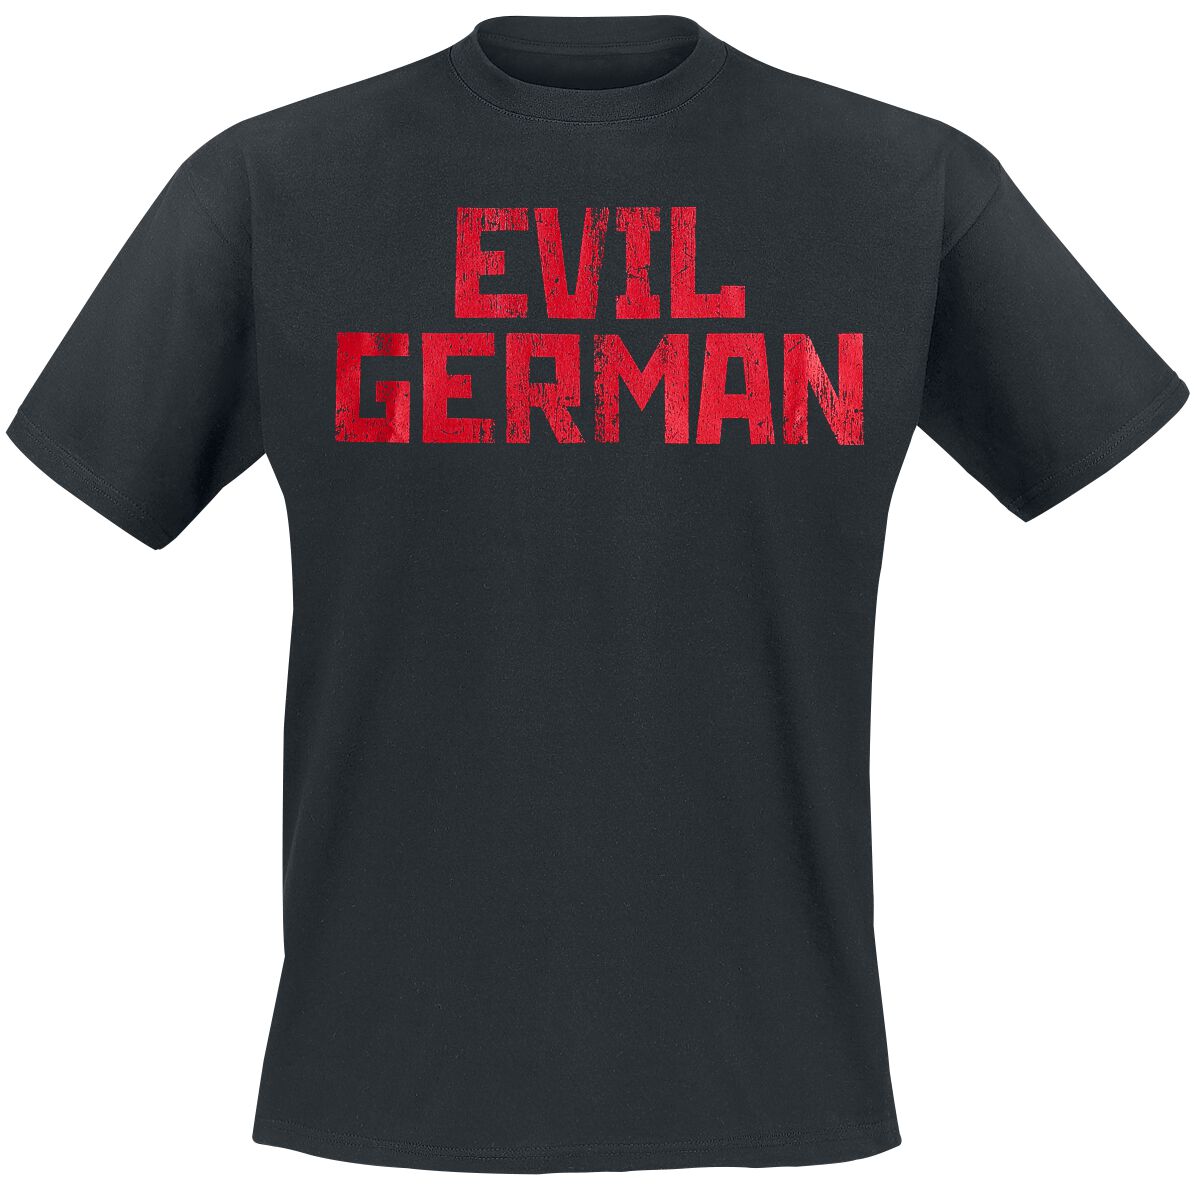 Rammstein T-Shirt - Evil German - 3XL bis 5XL - für Männer - Größe 3XL - schwarz  - Lizenziertes Merchandise!